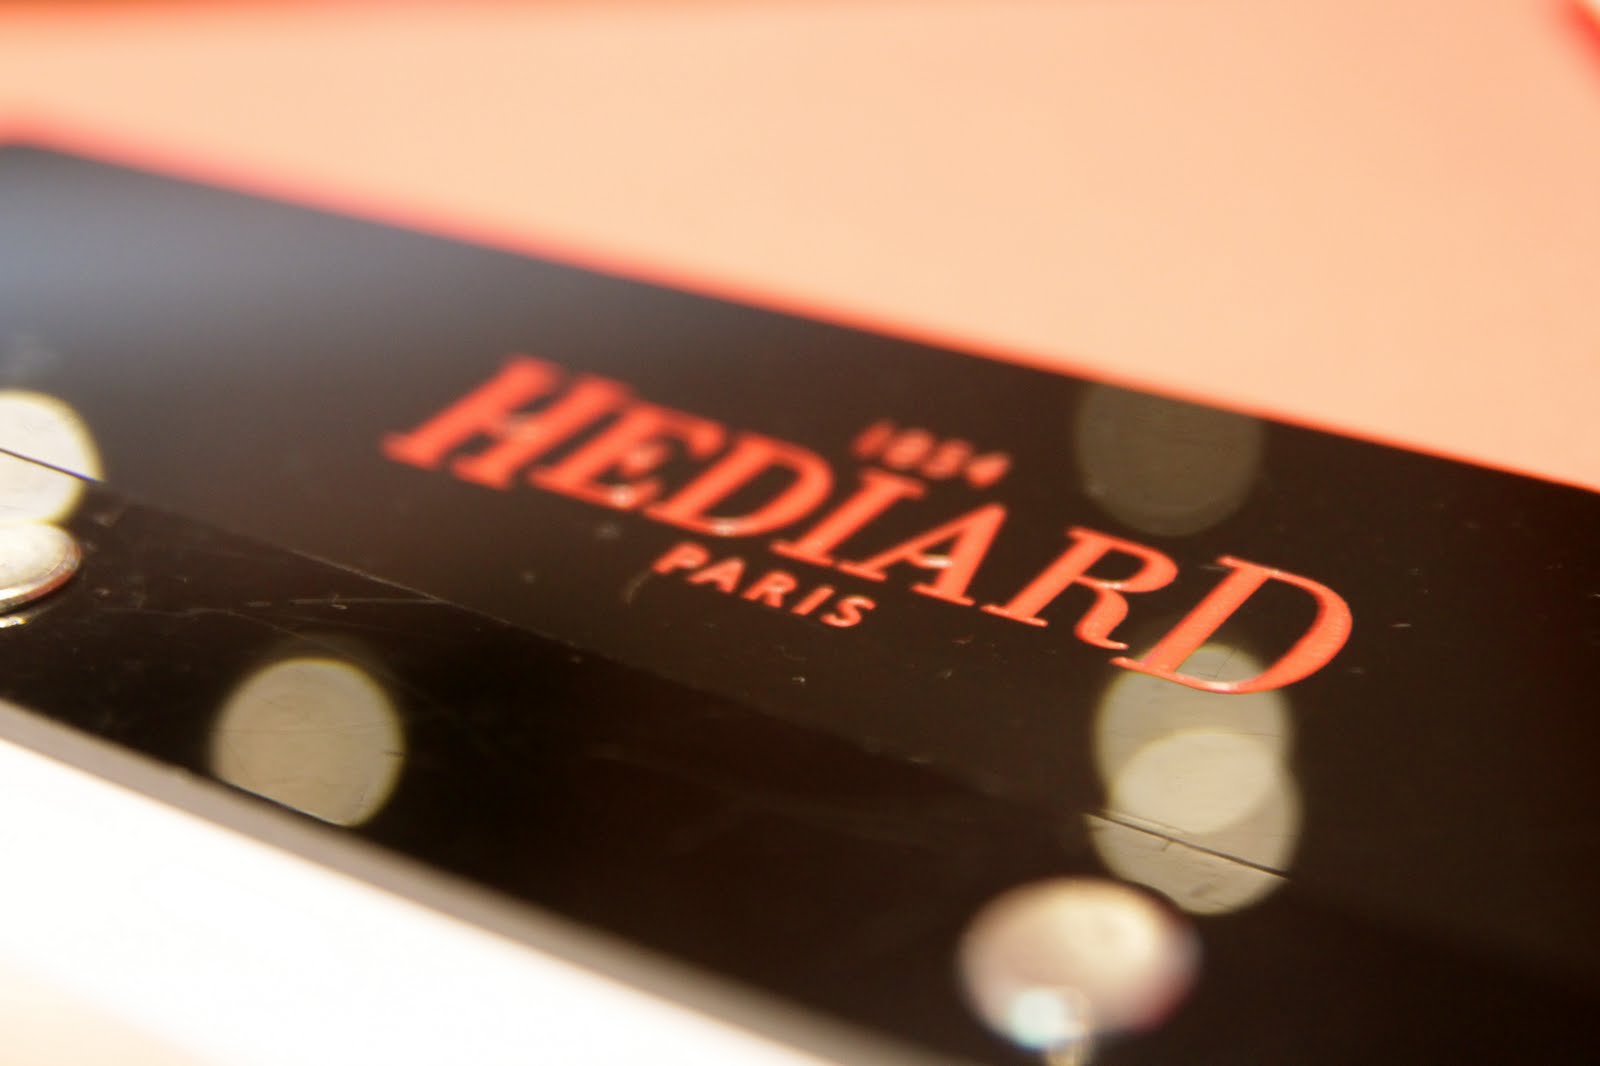 Hediard Cafe